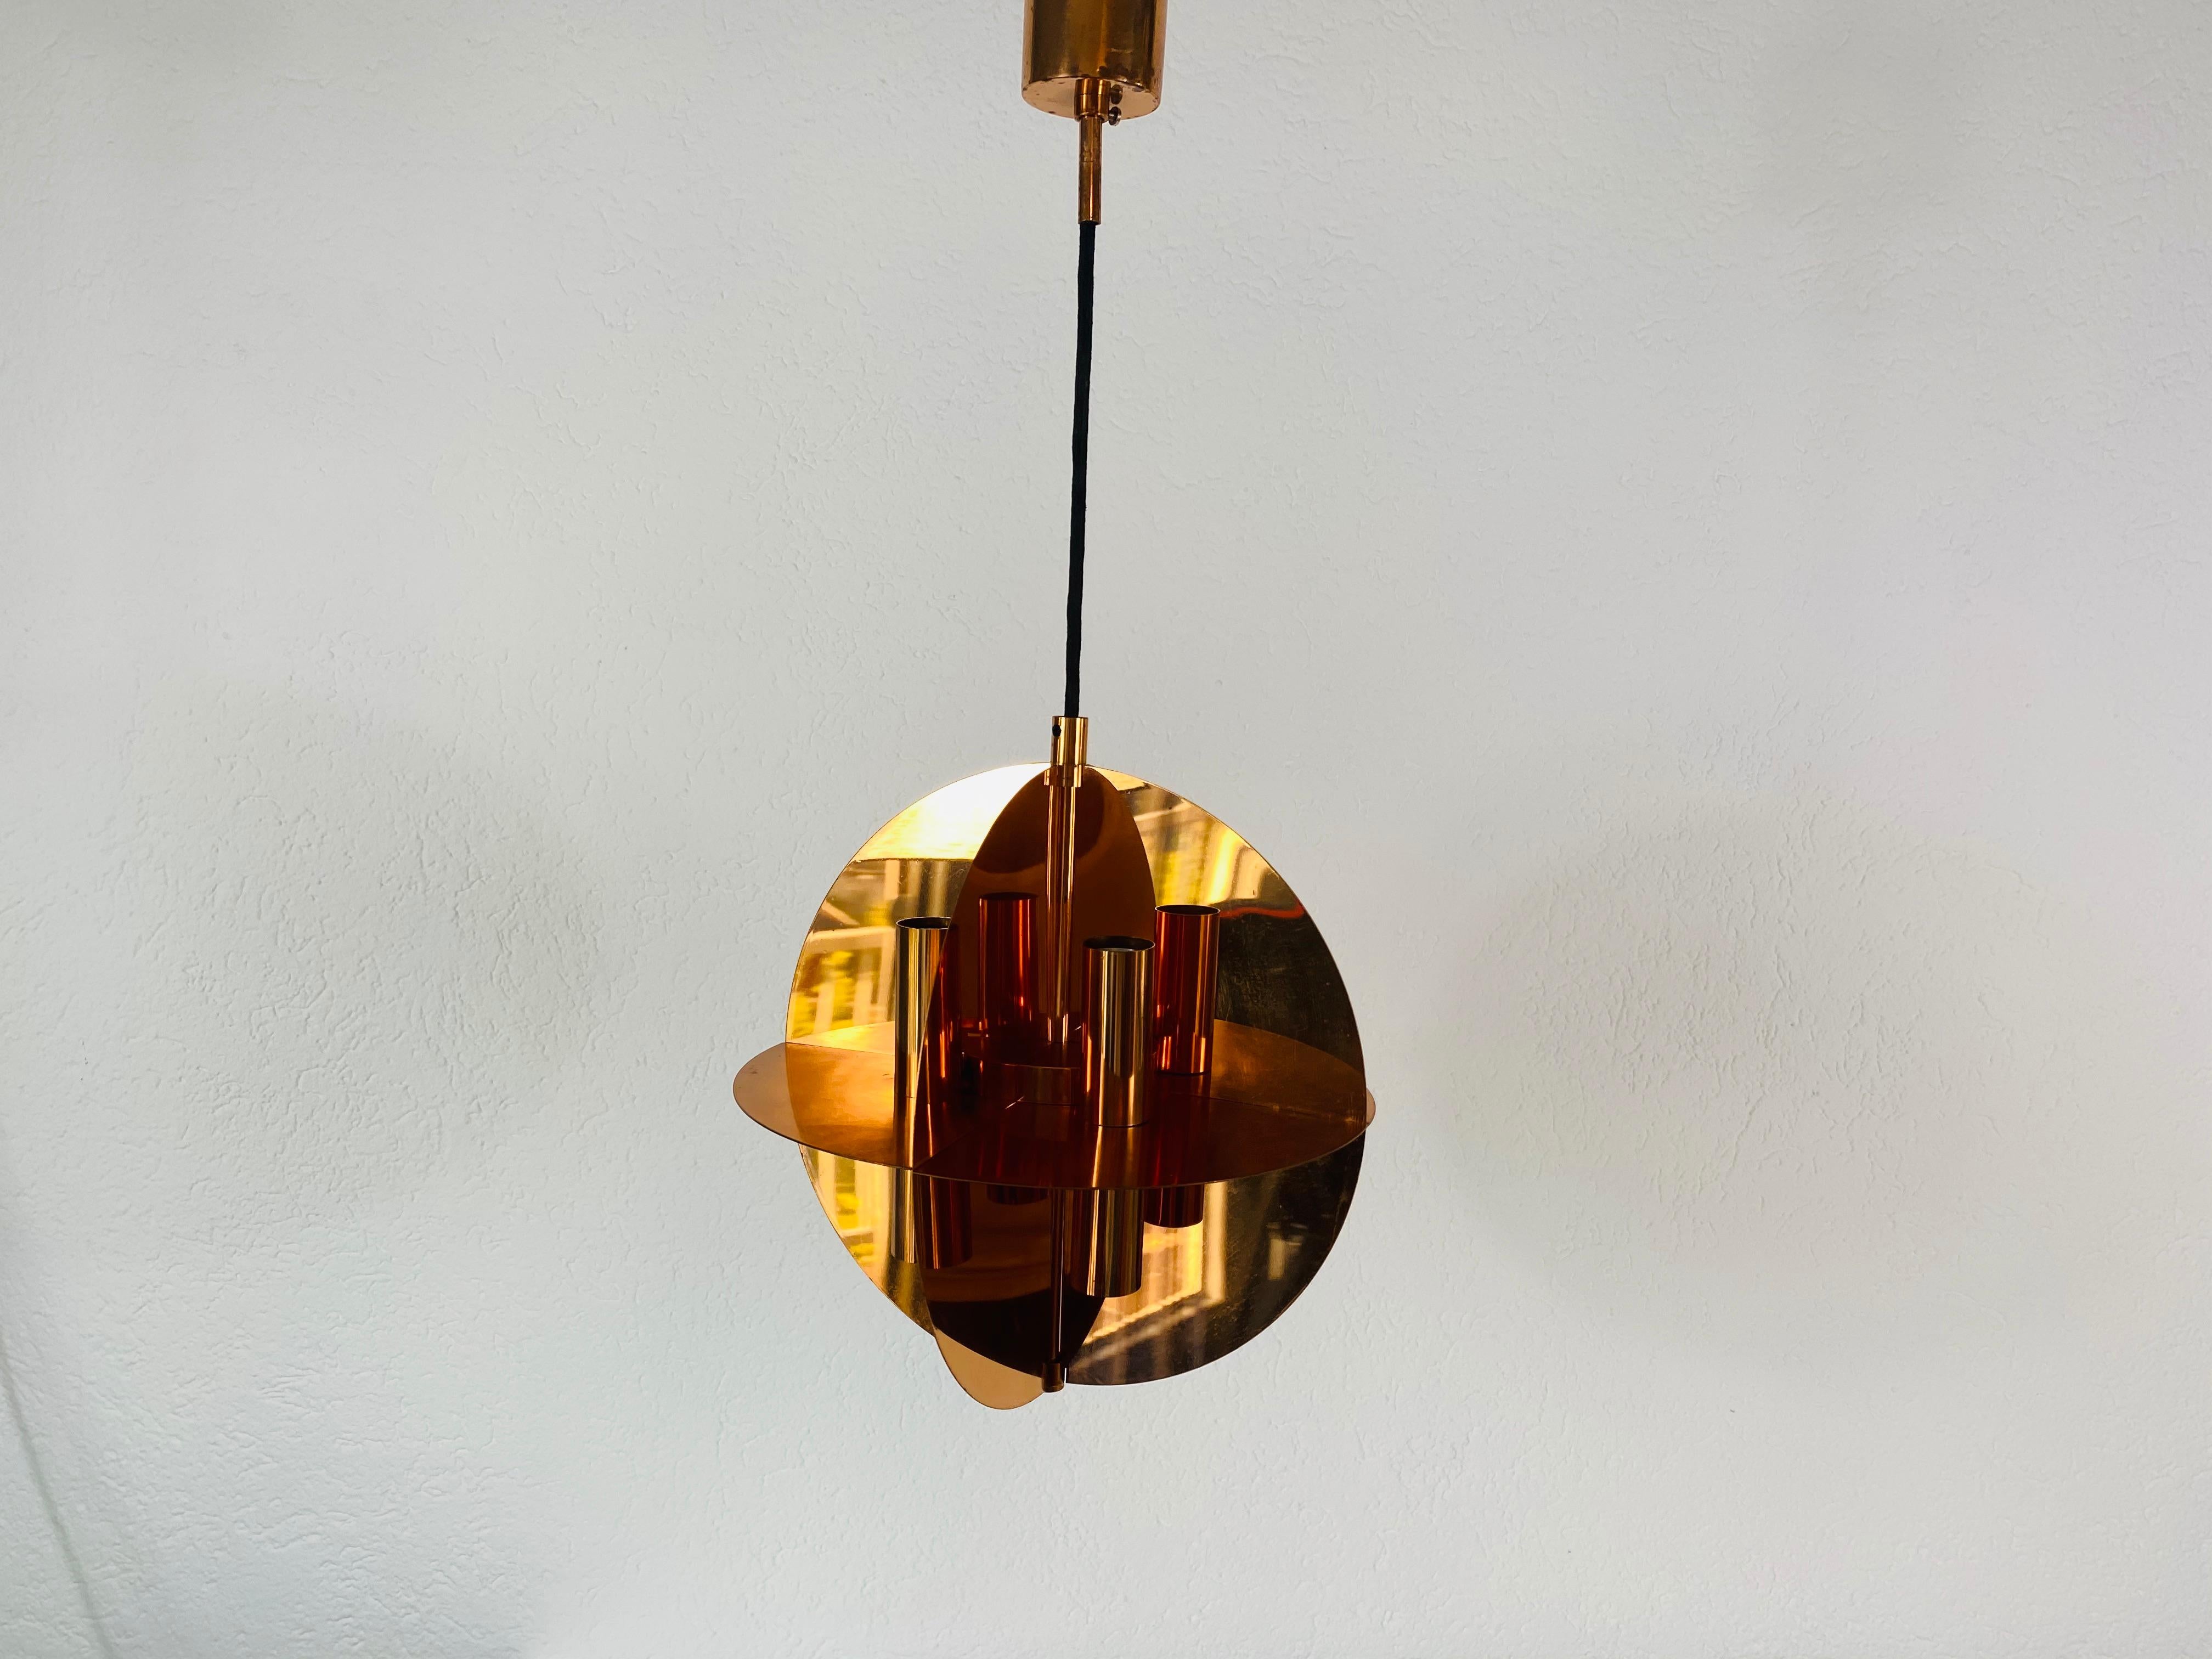 Extraordinaire lampe pendante en cuivre réalisée par Cosack dans les années 1970.

Mesures : Hauteur de l'abat-jour 34 cm

Hauteur maximale de 65 cm

Diamètre 27 cm 


Le luminaire nécessite huit ampoules E14. Très bon état